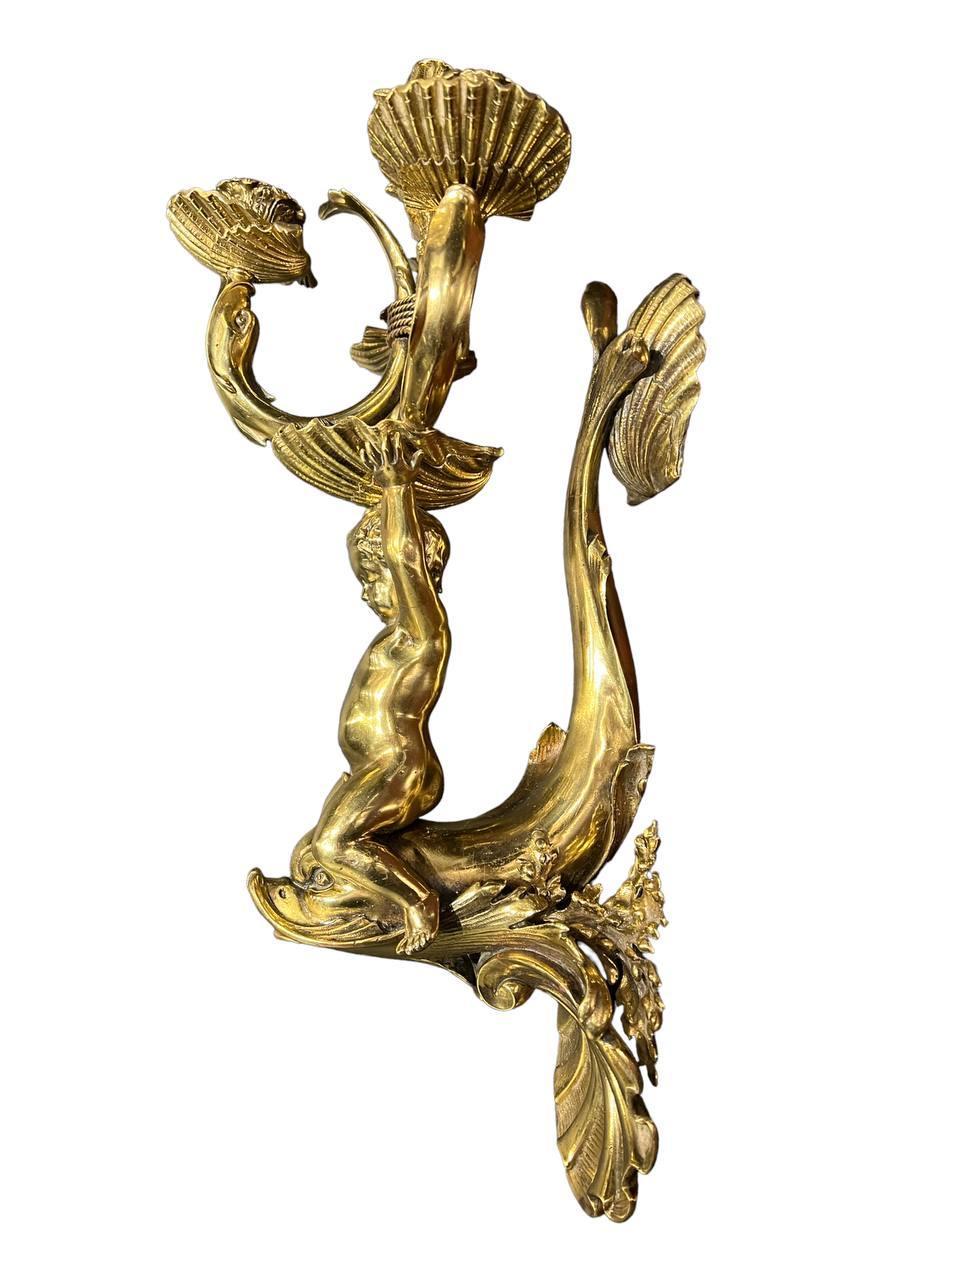 Caldwell vergoldete Bronze um 1900 mit einem Cherub auf einem Delphin, der 3 Lichter auf Schalen und ein Licht auf der oberen Schale hält. Großes Format und beeindruckende Details.